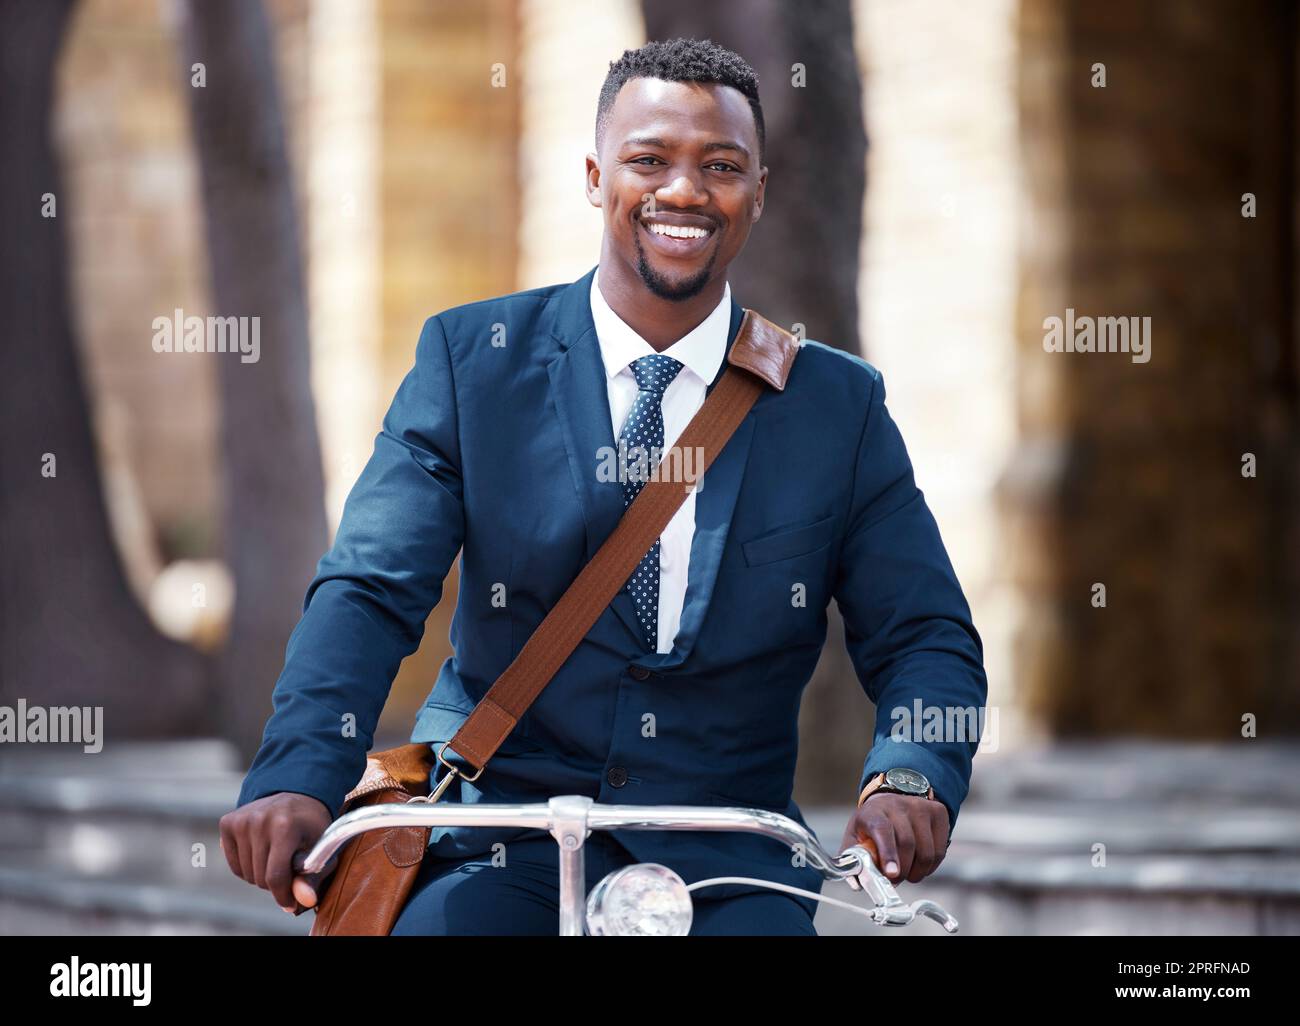 Porträt eines glücklichen Geschäftsmanns auf dem Fahrrad oder Fahrrad auf seiner morgendlichen Reise zur Arbeit in der Stadt. Mitarbeiter, Unternehmer oder Arbeiter auf der Fahrt mit einer Suite und einem Lächeln verringern seine CO2-Bilanz Stockfoto